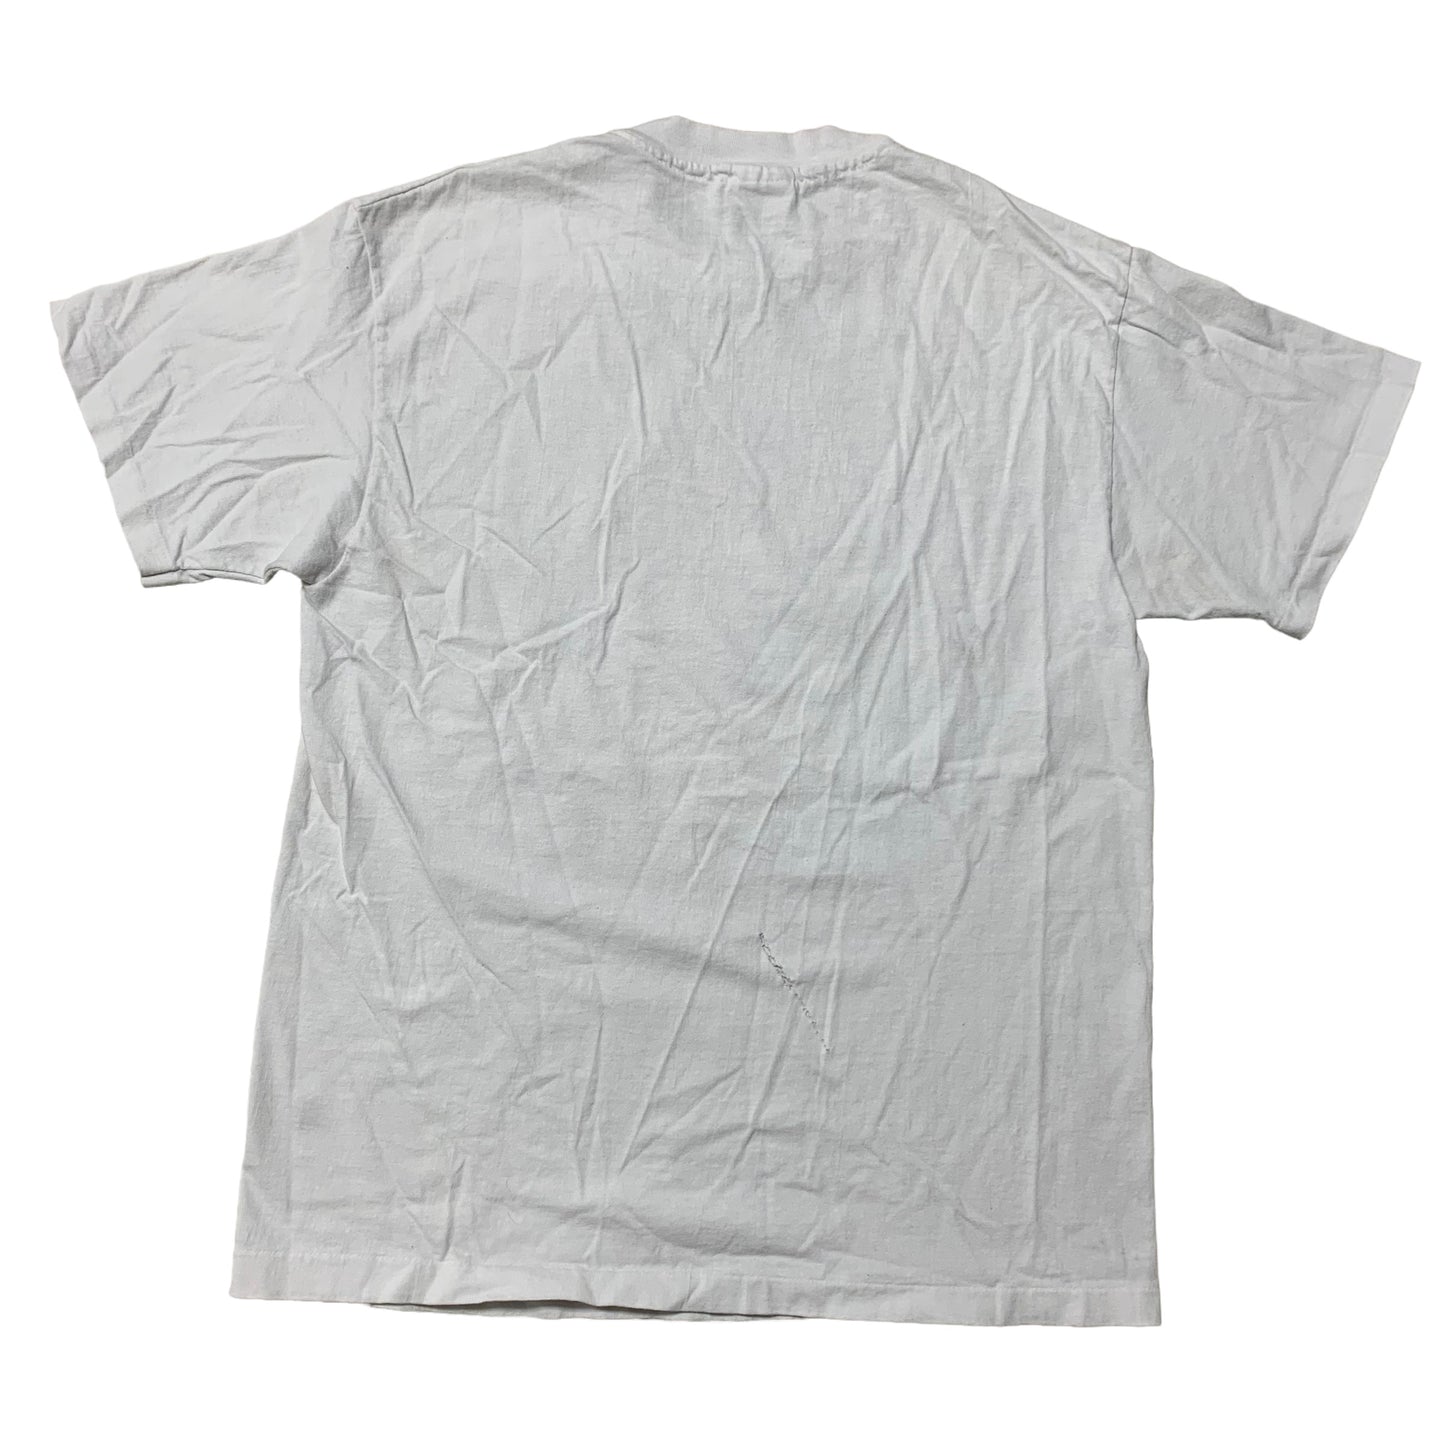 90’s Hawaiian Punch T-Shirt – Sad Boy Vintage